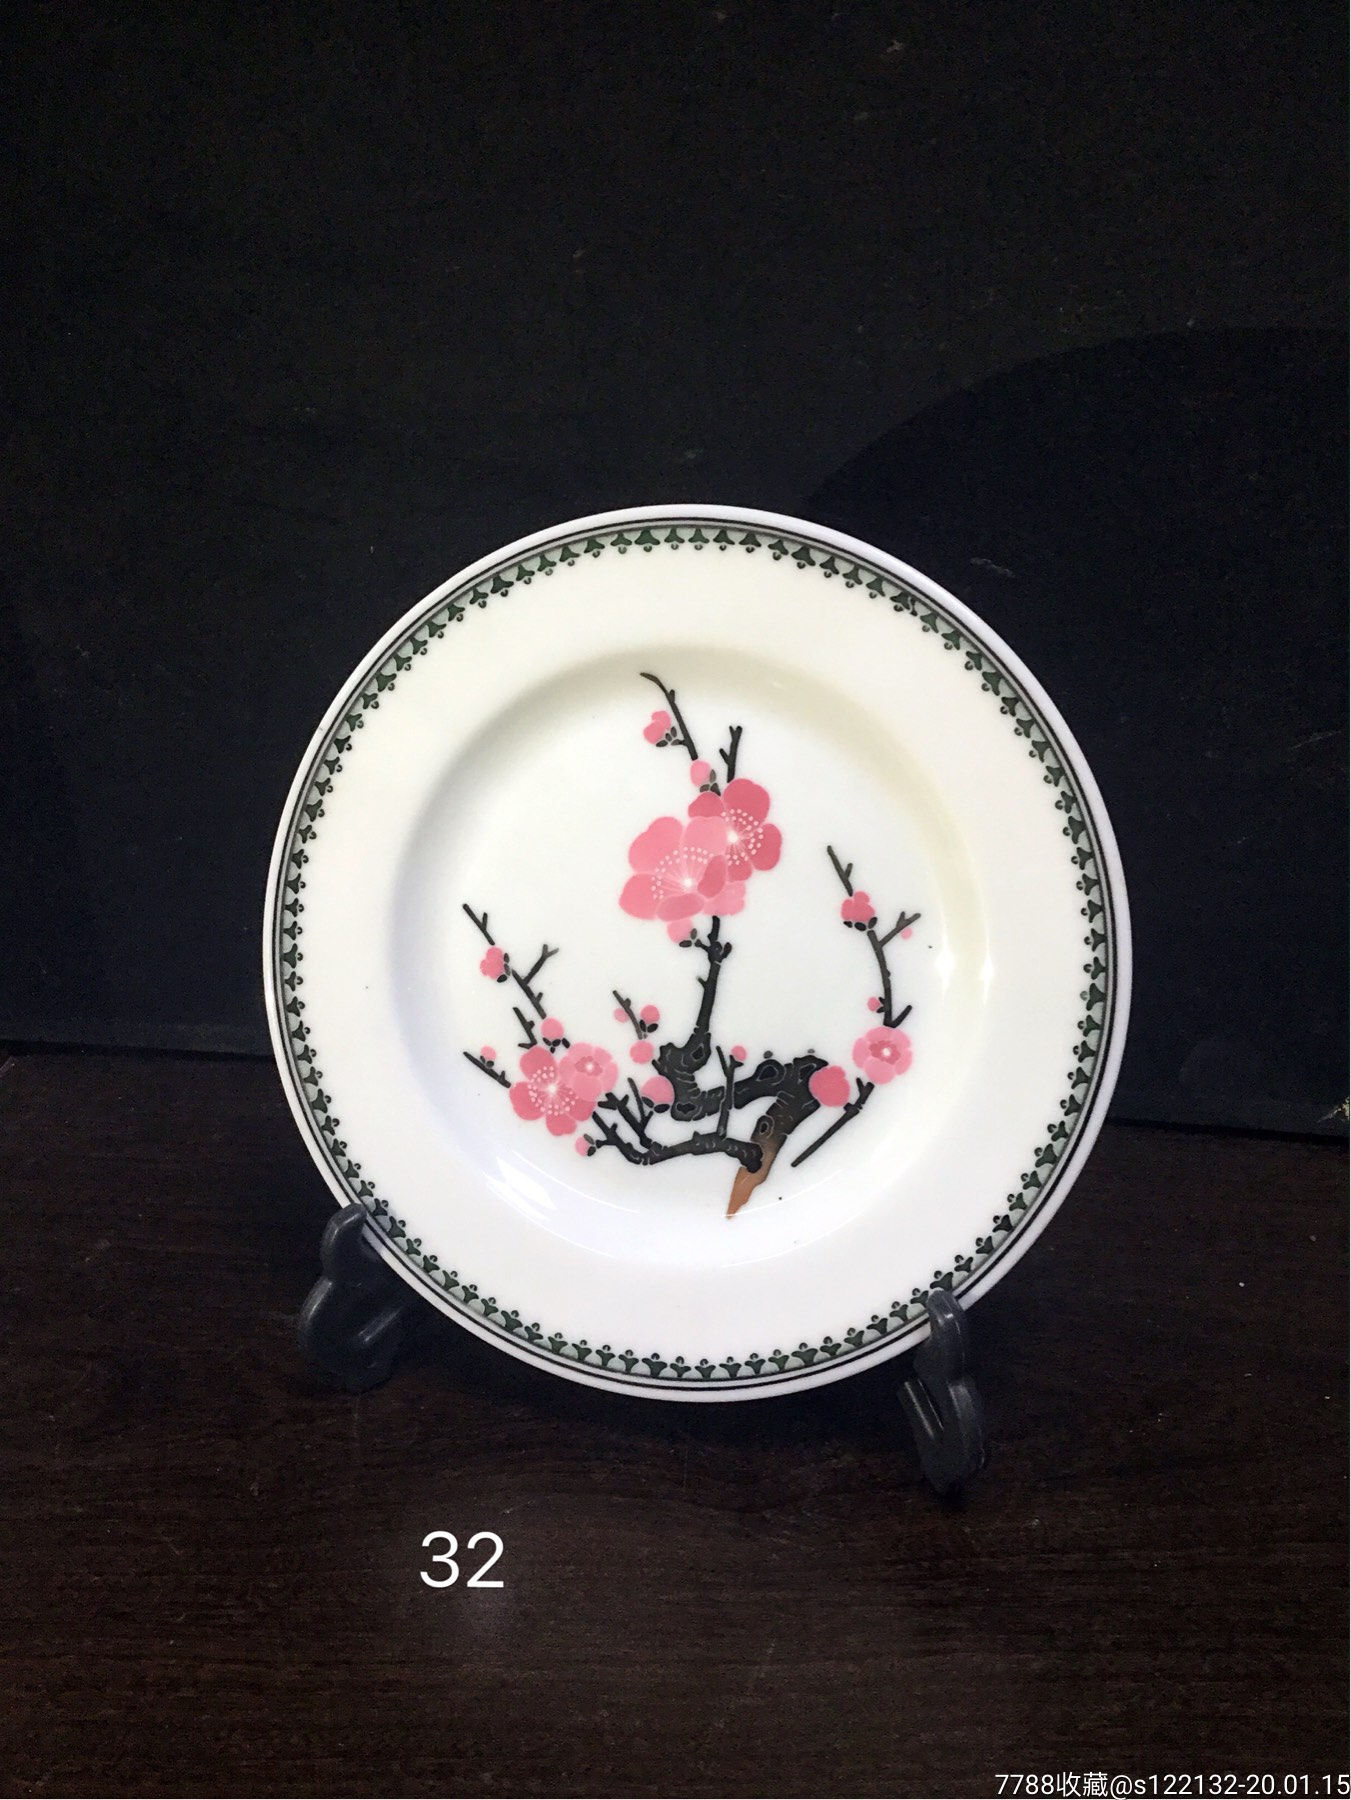 5品99湖南界牌陶瓷研究所特制手绘御温杯一对$10,0008.